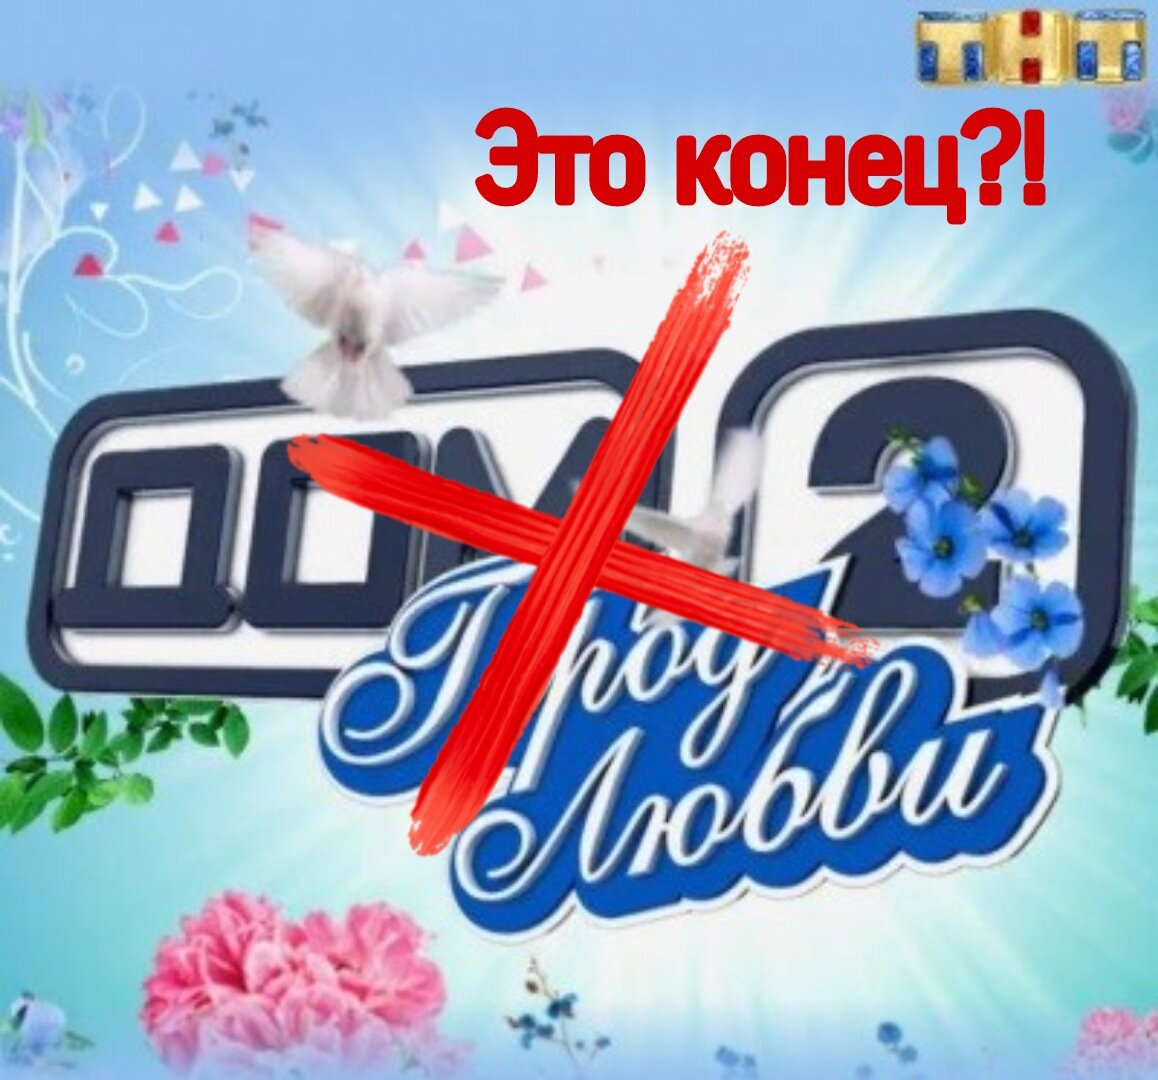 ДОМ-2 закрывается?! Почему Кадони отказался выходить в последнем выпуске “Бородина против Бузовой“?!